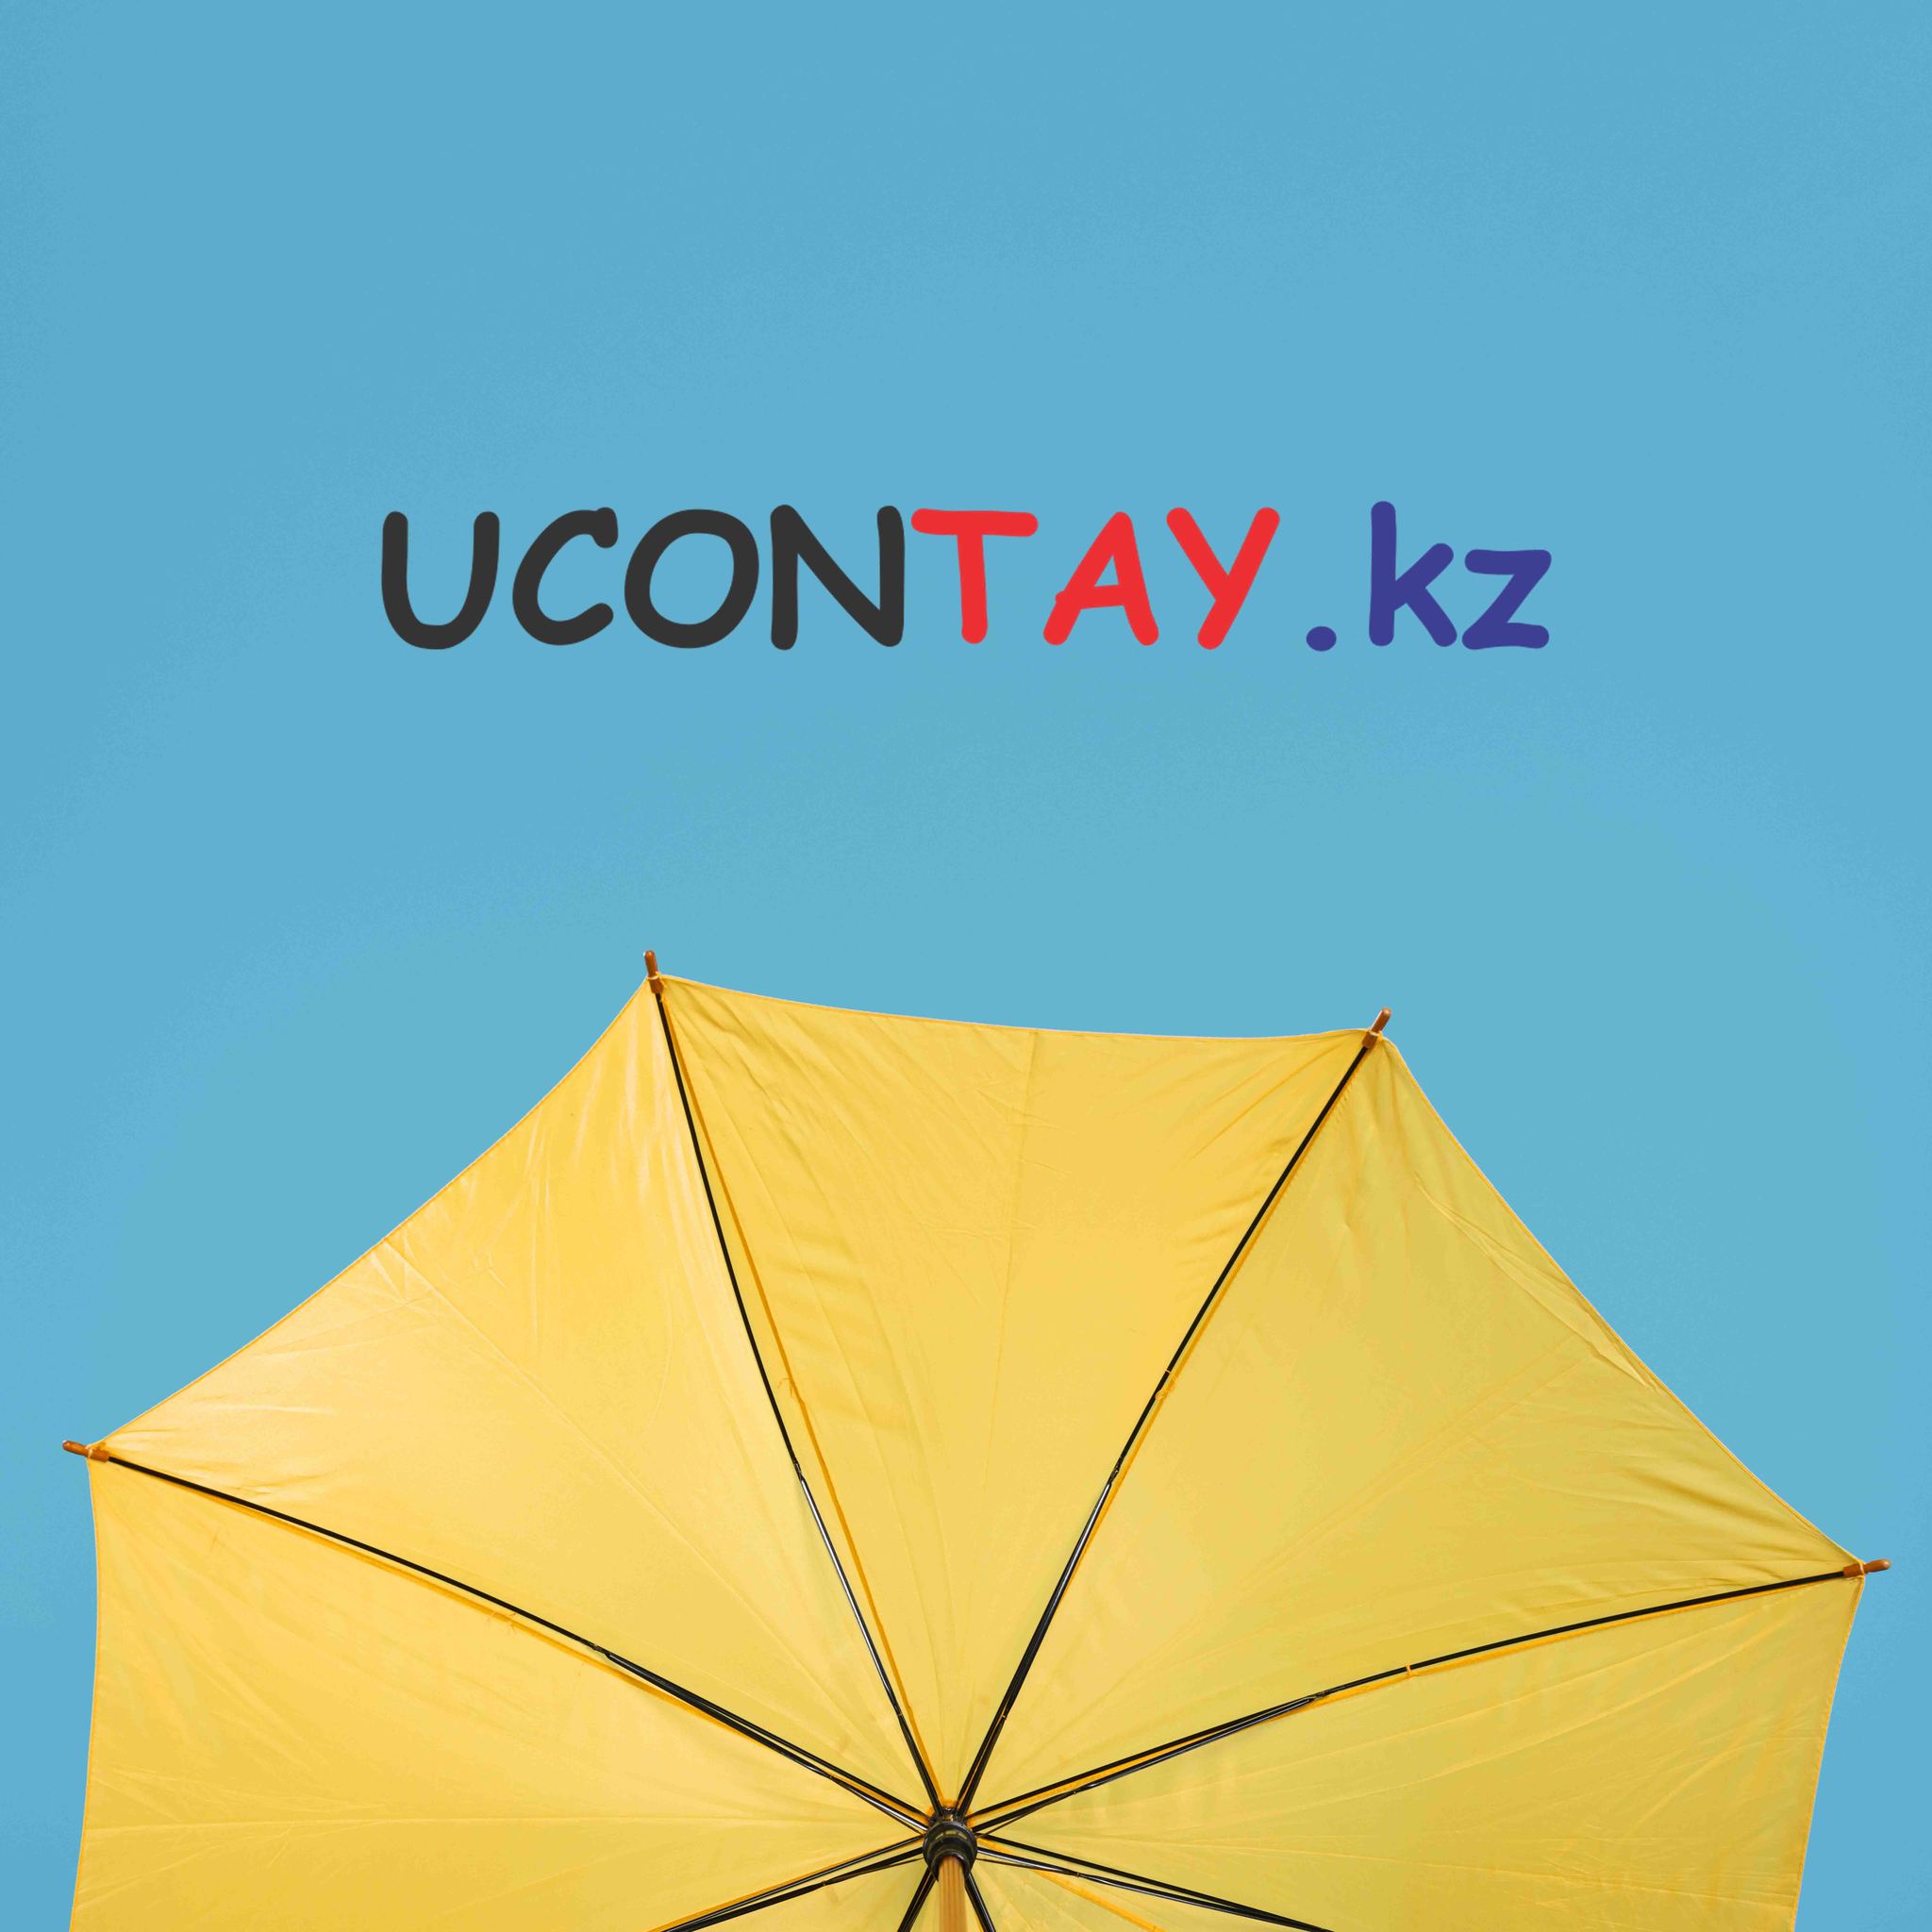  Ucontay.kz